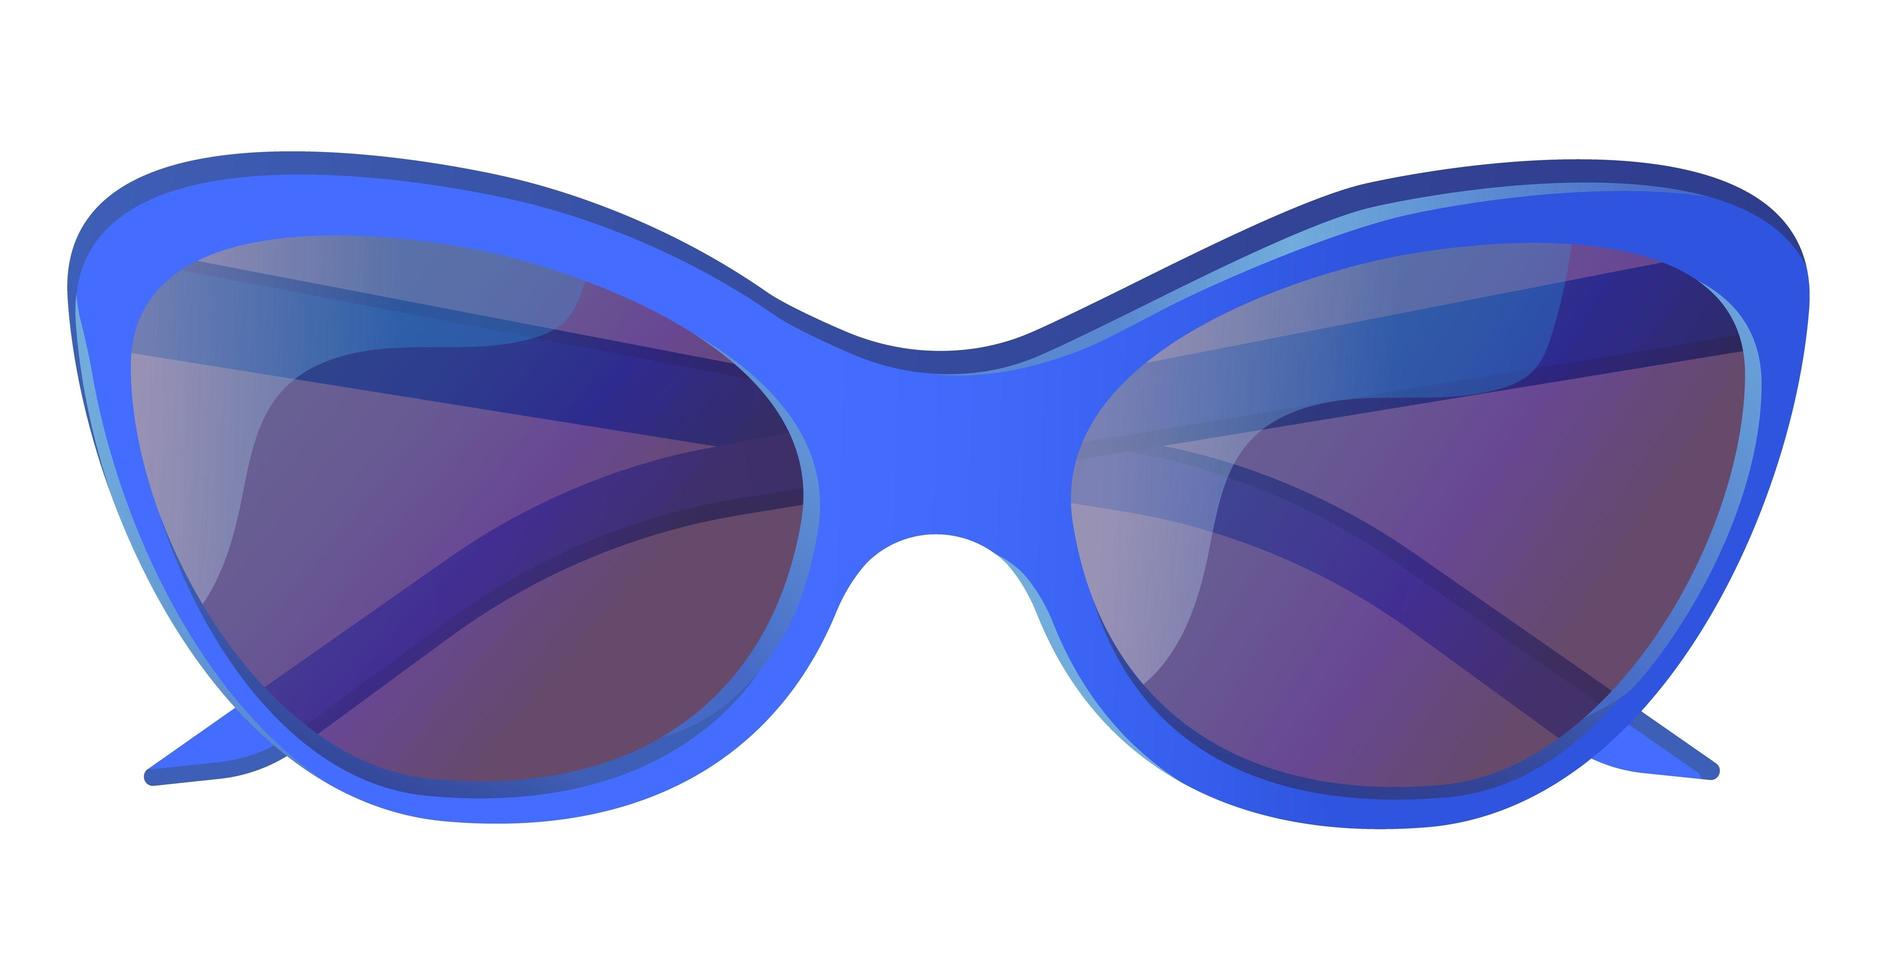 occhiali da sole blu uv cat eye. concetto di protezione solare. illustrazione vettoriale stock isolato su sfondo bianco in stile cartone animato piatto